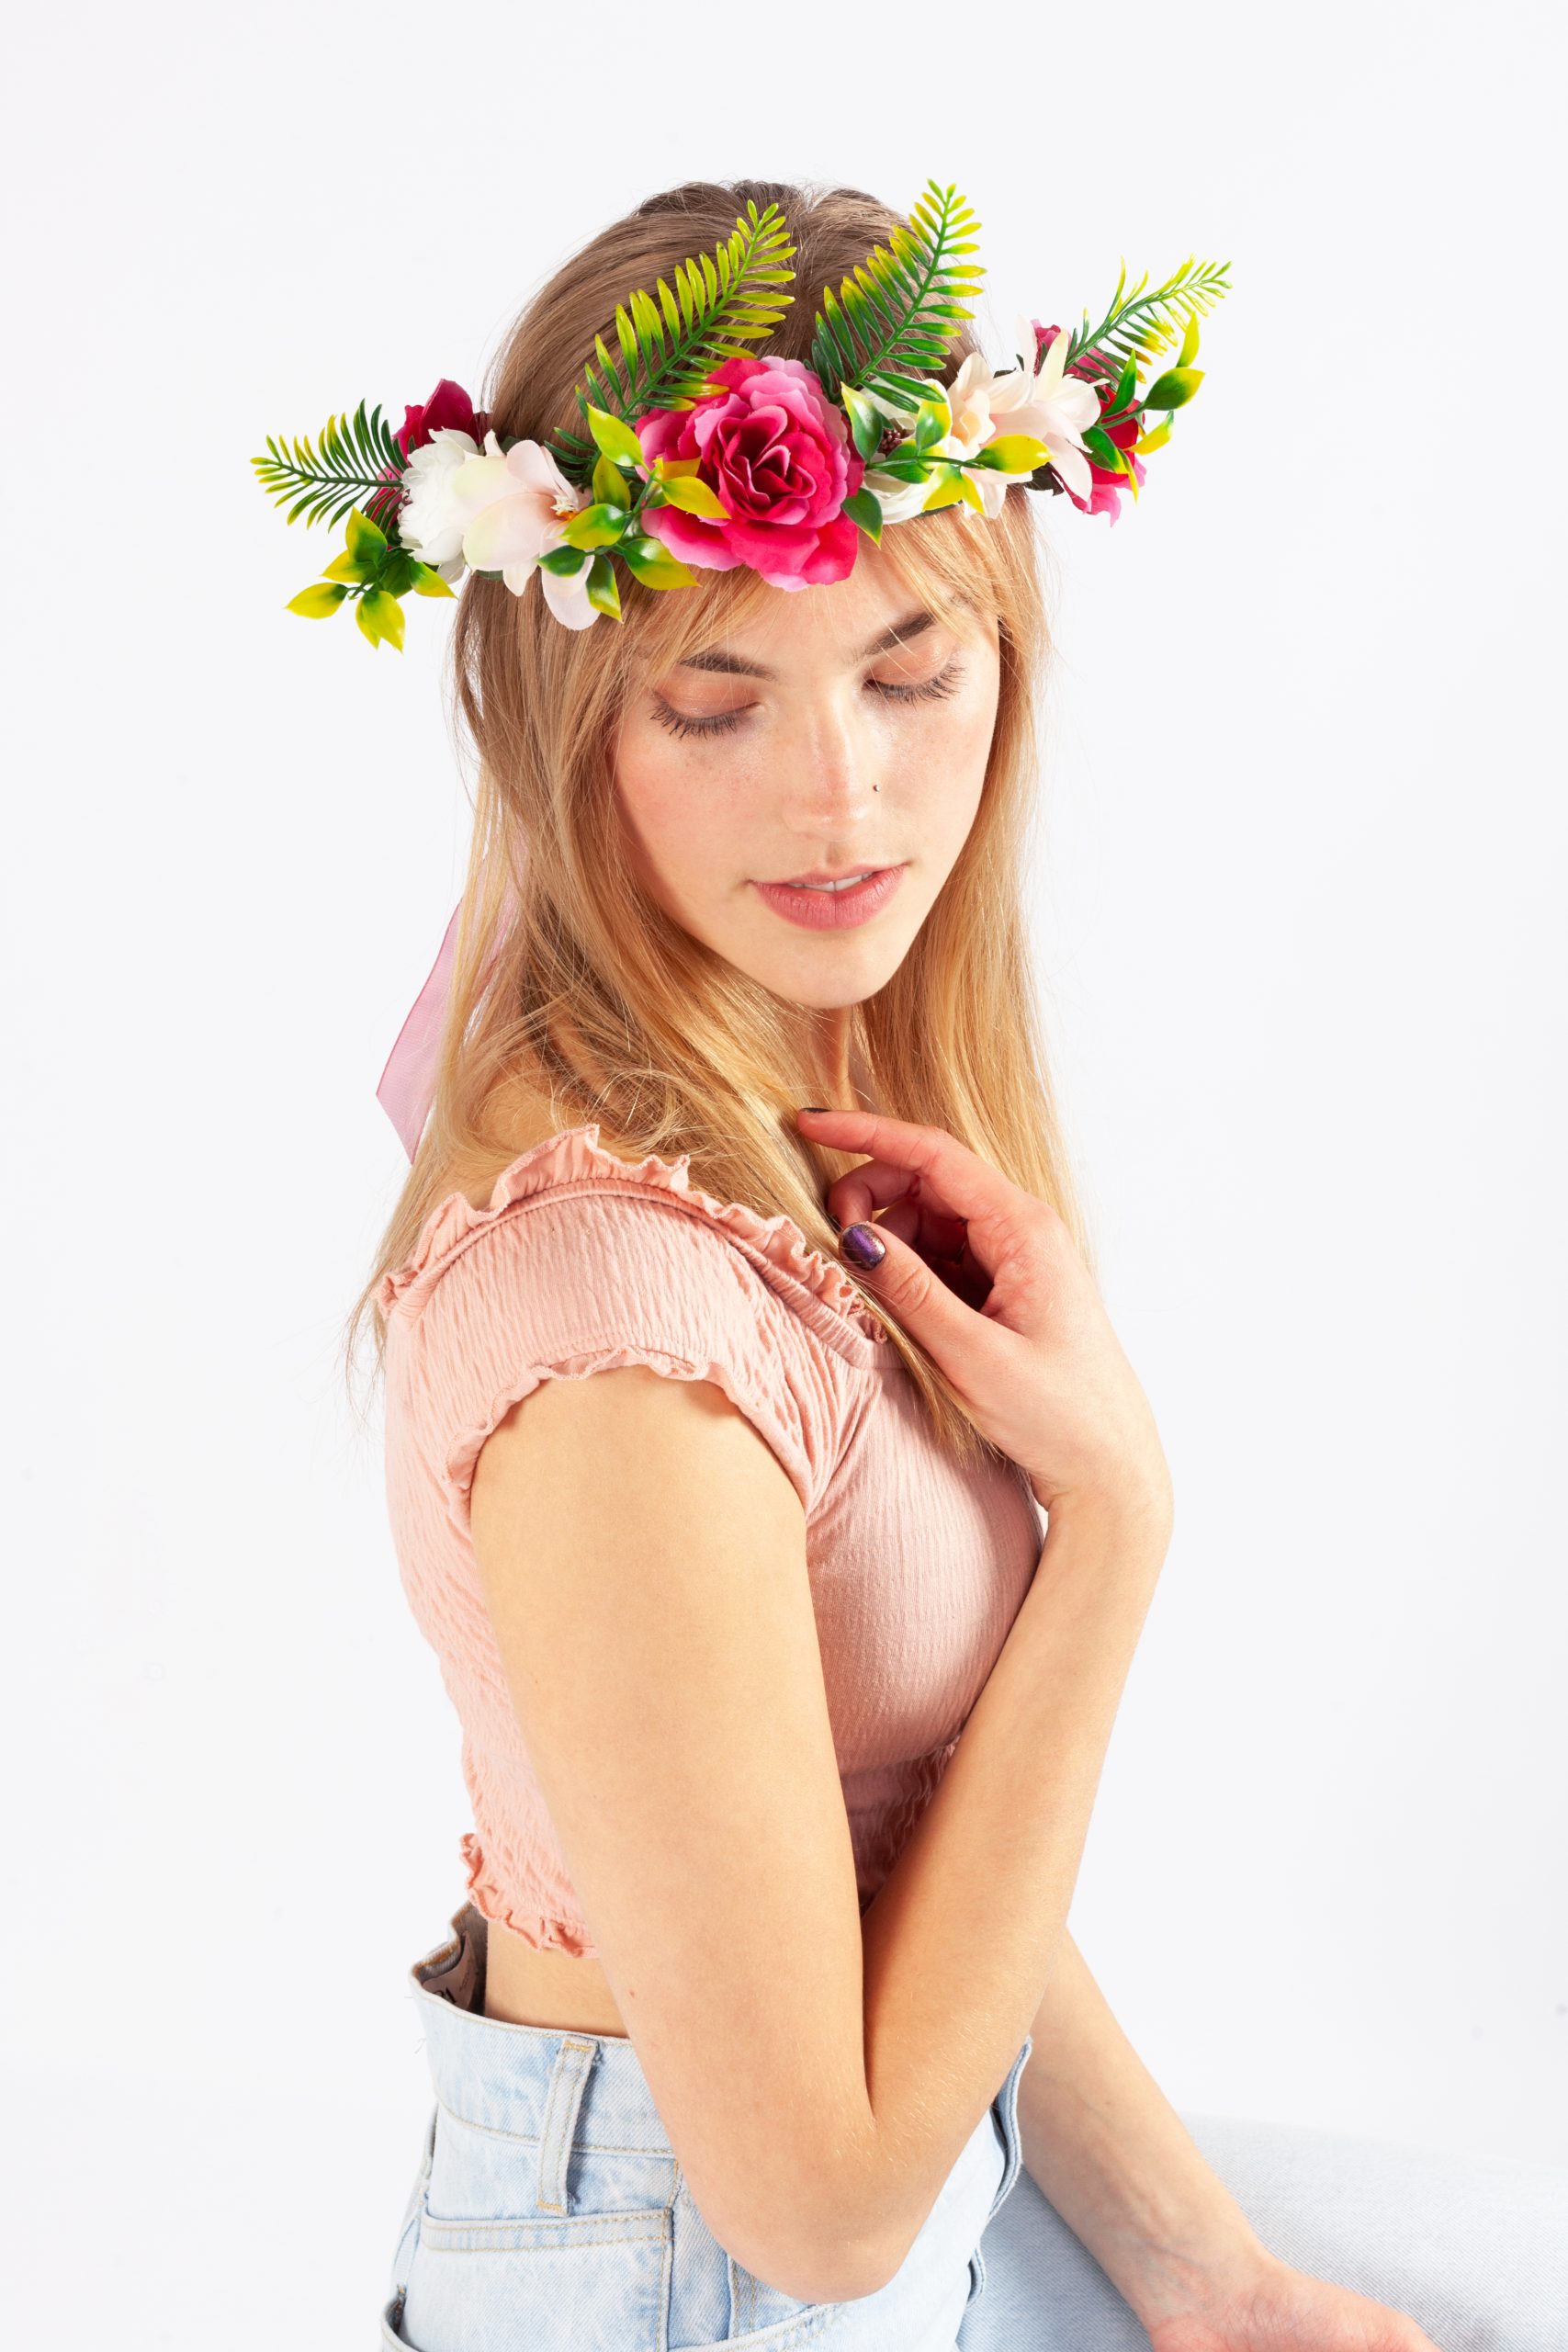 het ergste Verzoekschrift Vrijgevig Bloemenkrans roze jungle bloemetjes haarband kopen? - FeestinjeBeest.nl